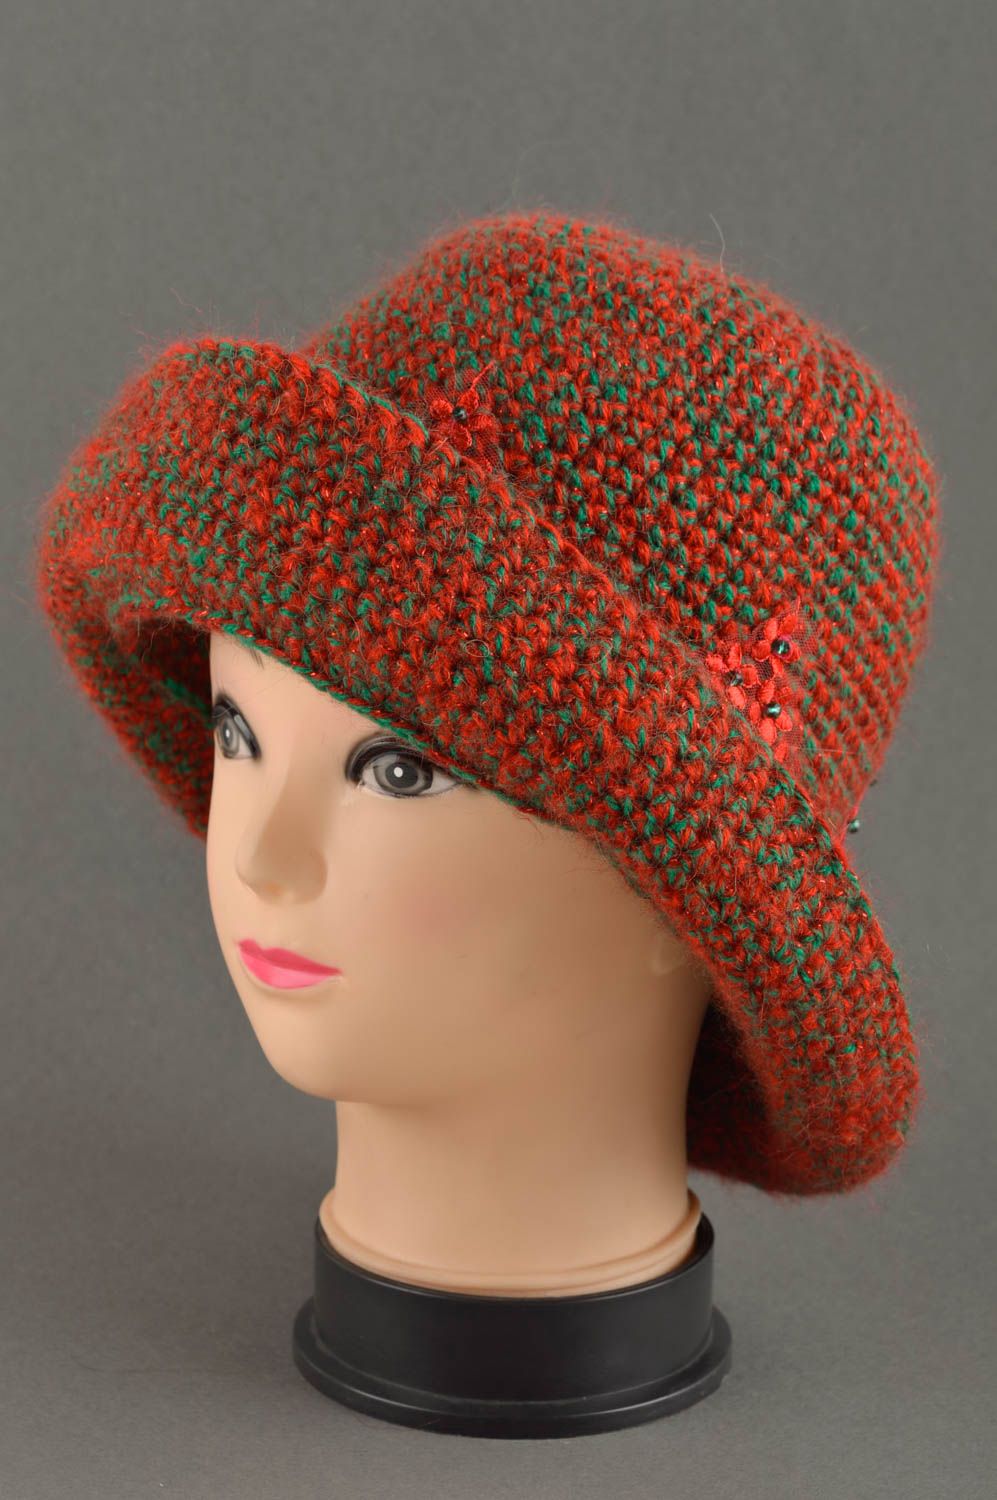 Handmade baby hat knitted baby hat designer headwear unusul hat for girls photo 1